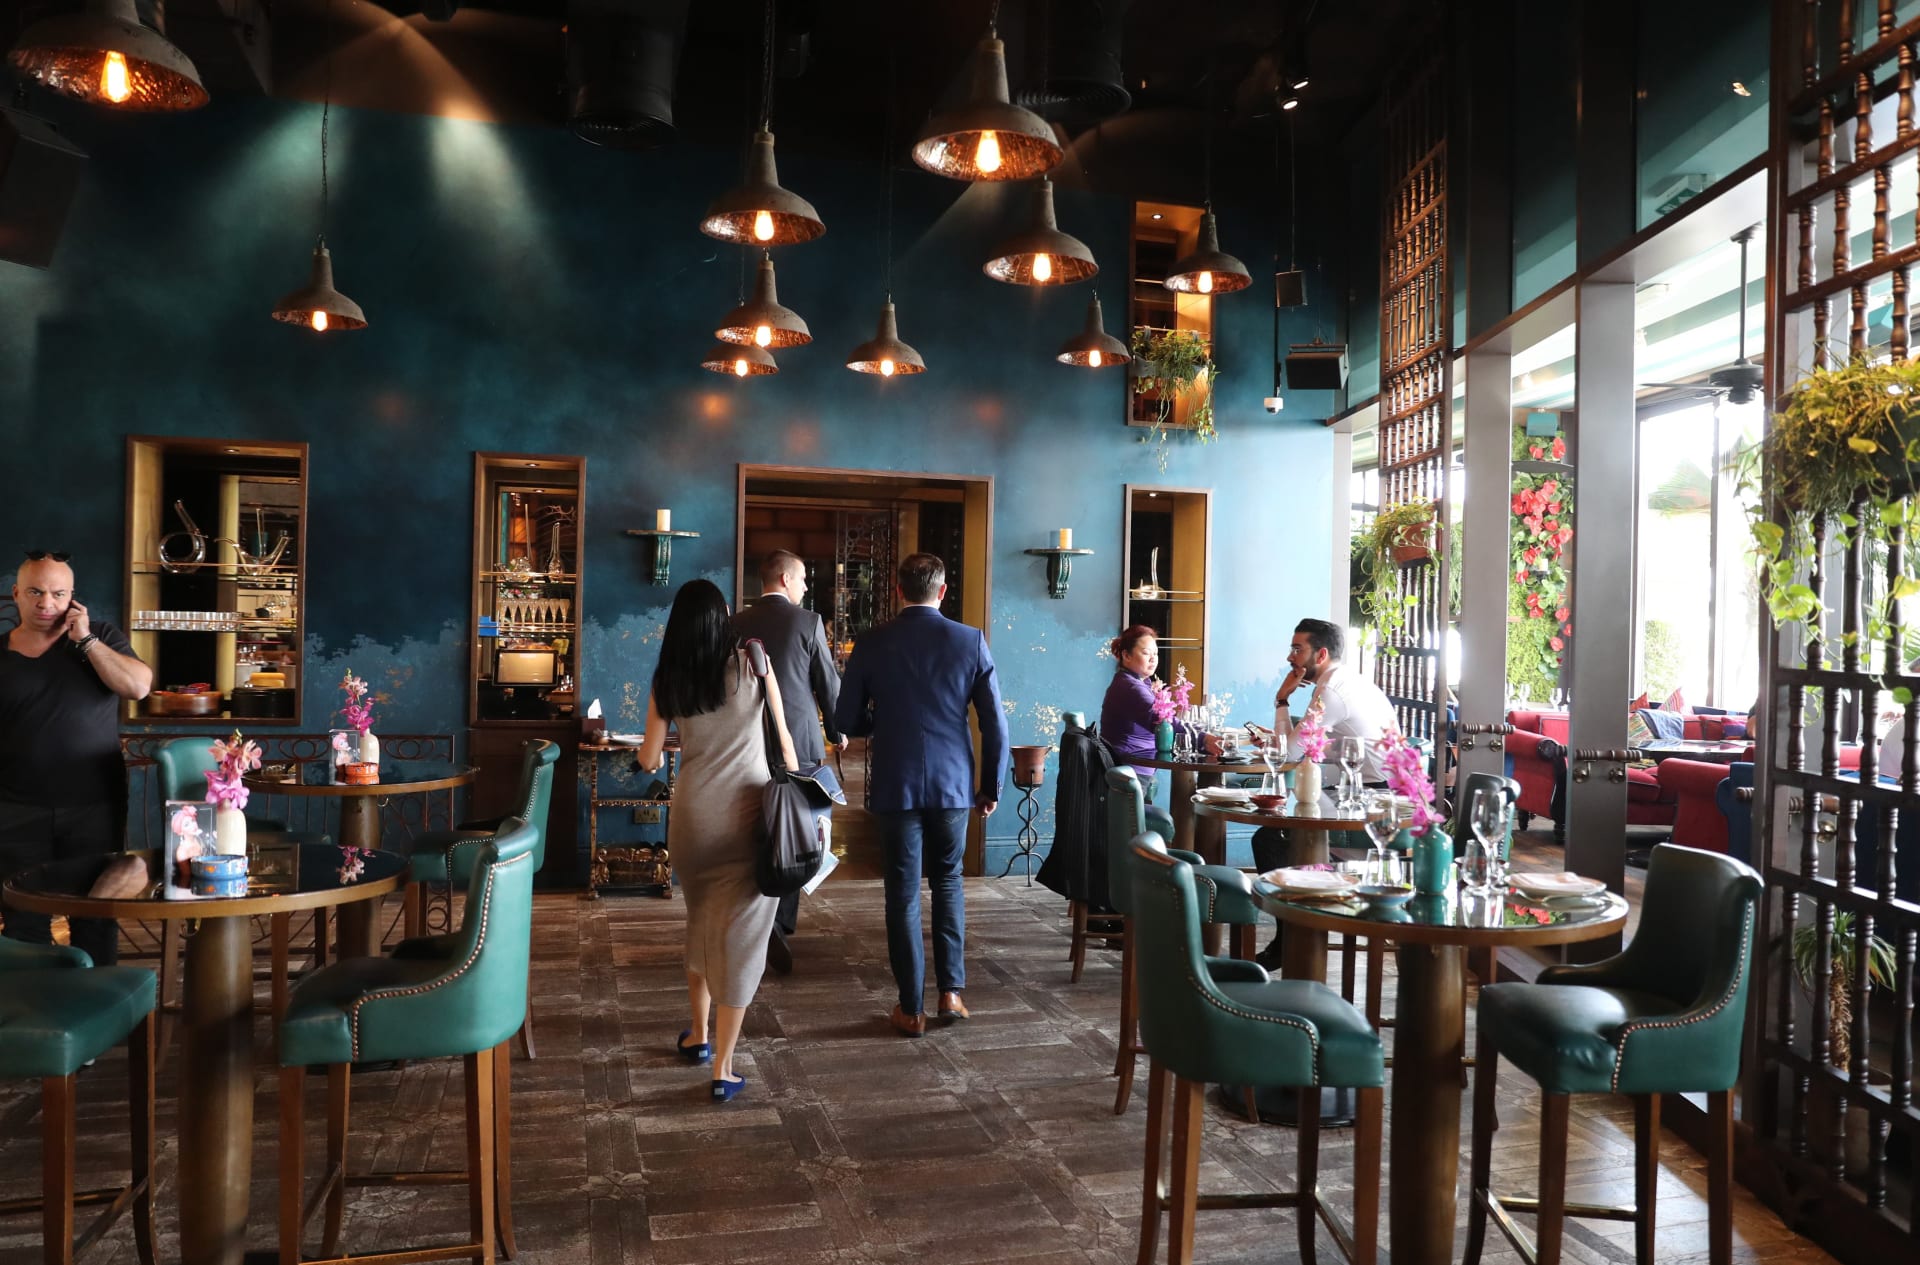 مطعم في دبي يتصدر قائمة أفضل 50 مطعمًا في الشرق الأوسط وشمال أفريقيا 